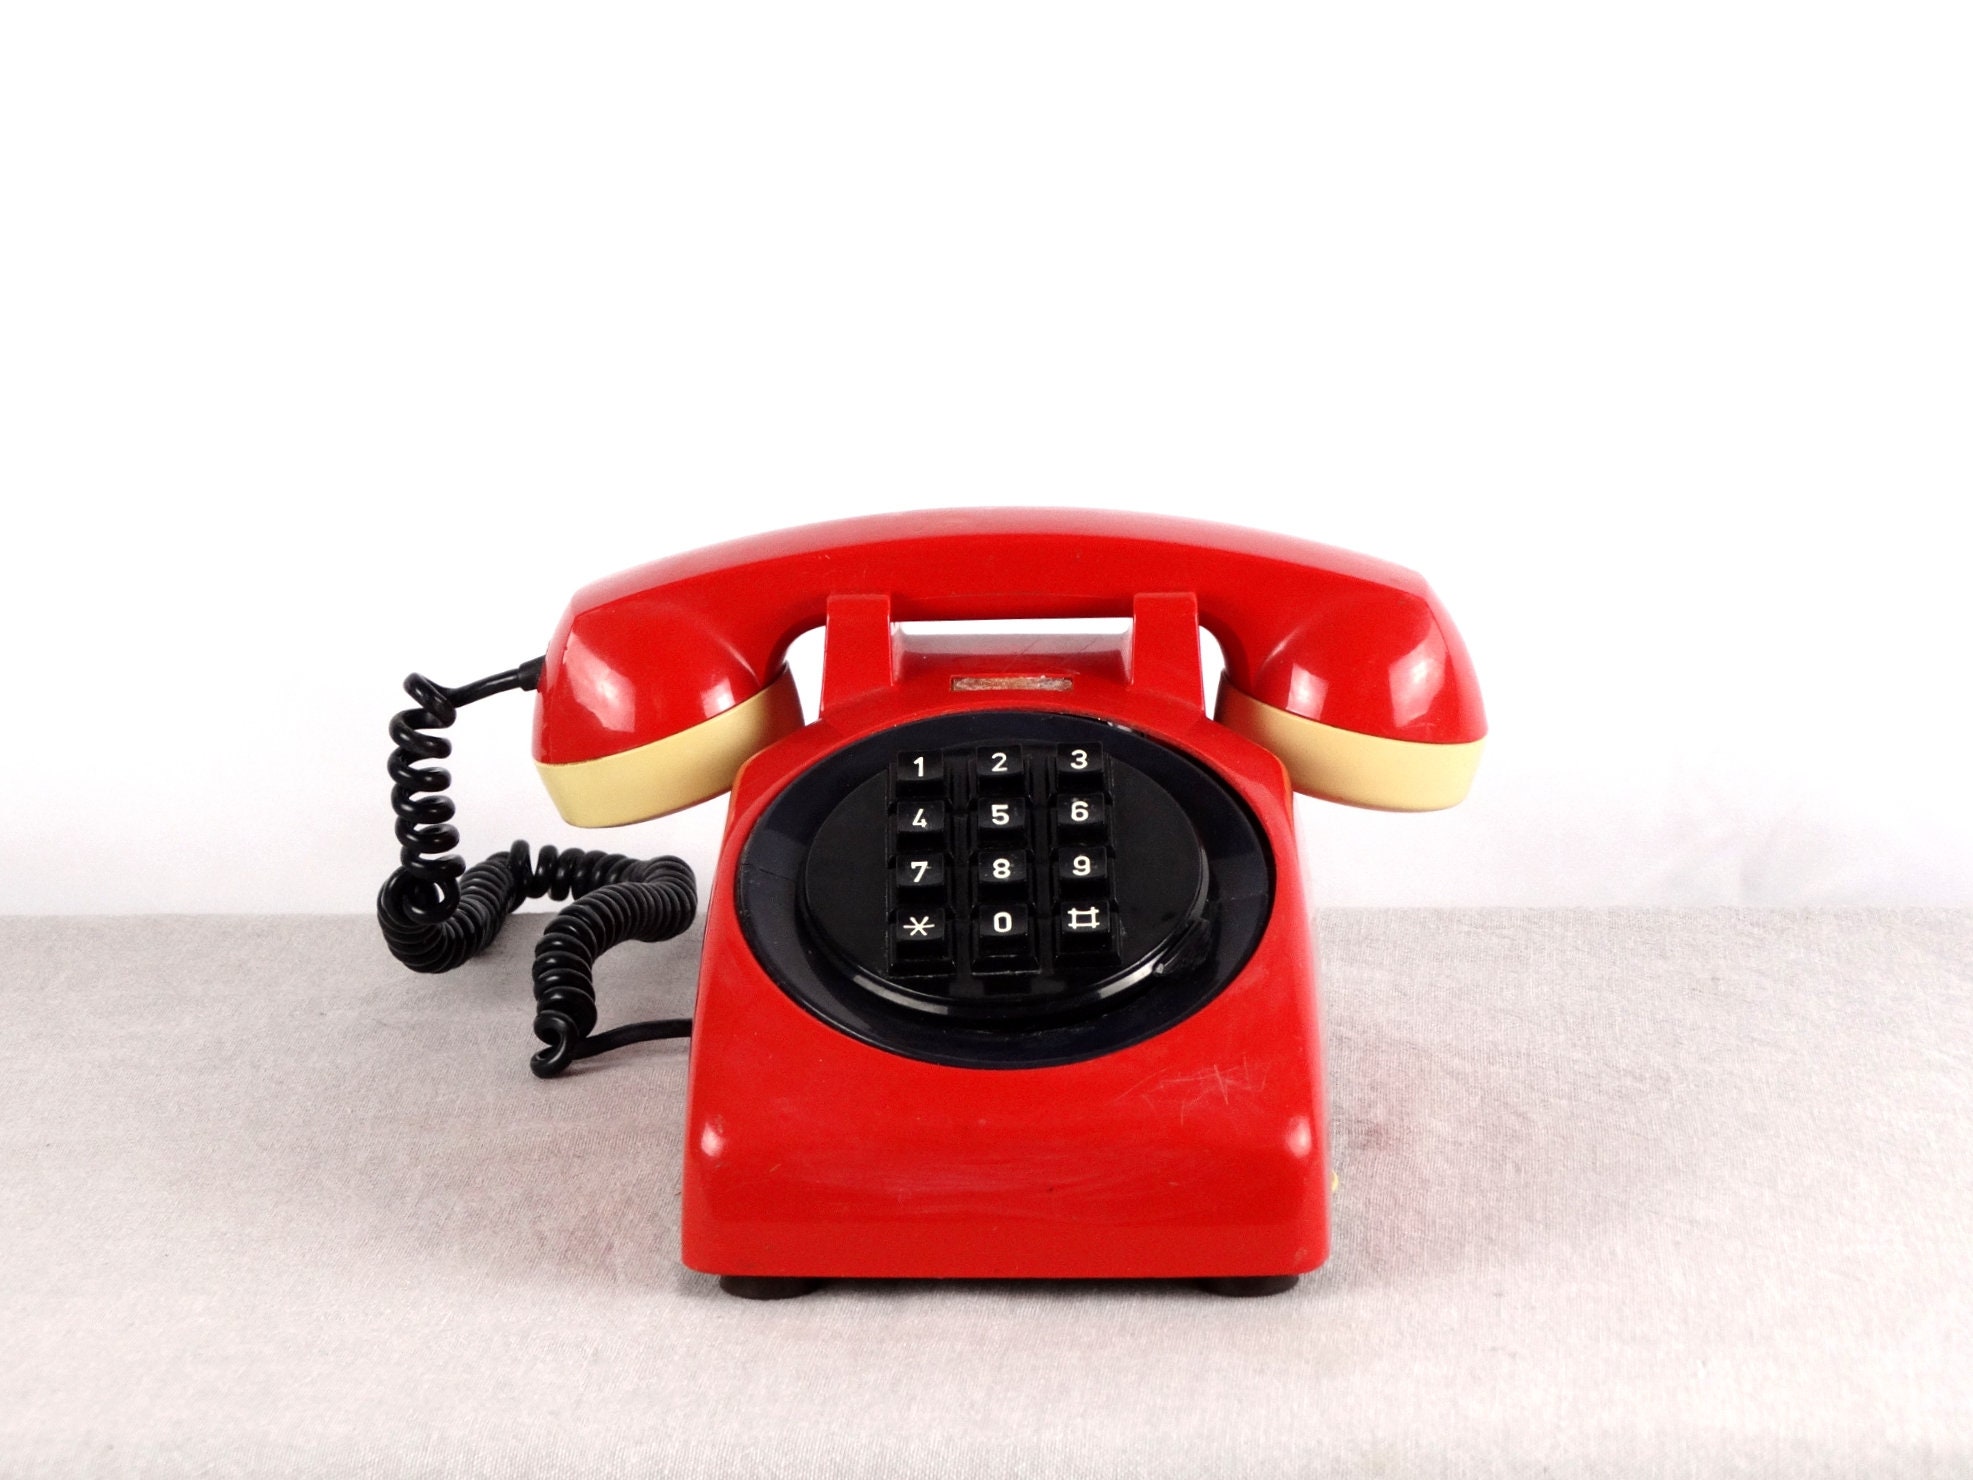 Красный телефон 12. Красный телефон. Красная телефонная трубка ретро. Мини телефон красный. Советский красный стационарный телефон с кнопками.